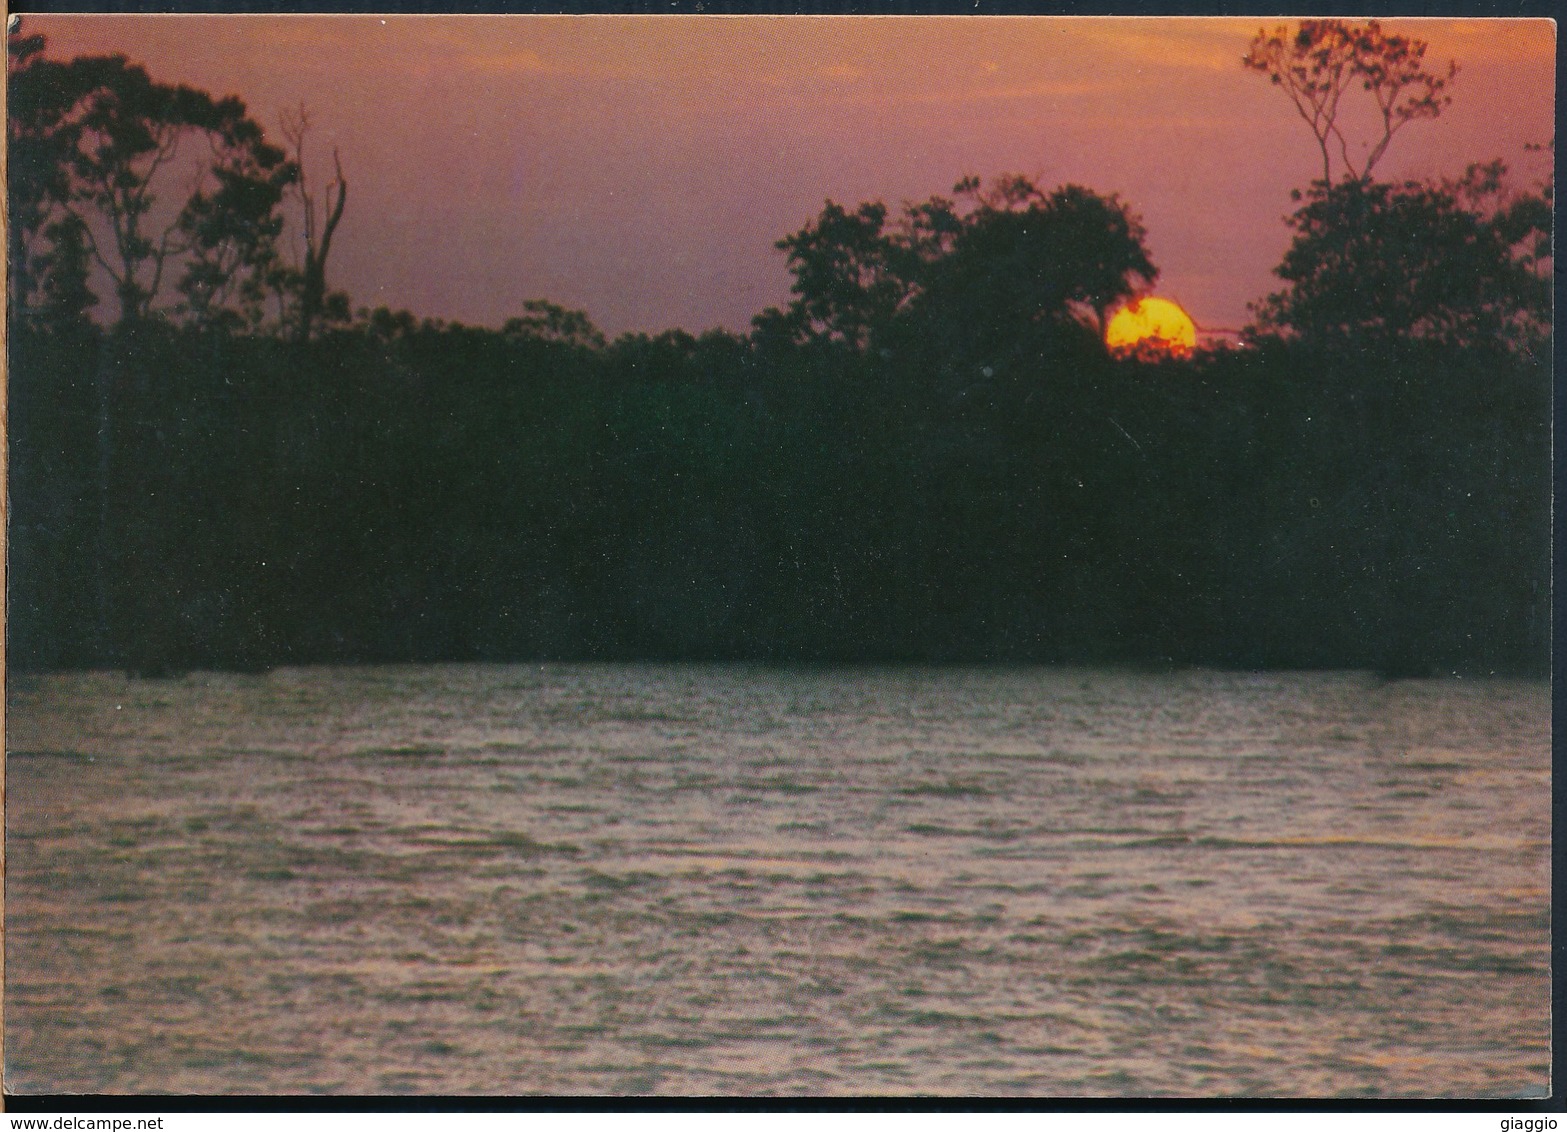 °°° 19802 - BRASIL - REGIAO AMAZONICA - POR DO SOL NO RIO NEGRO °°° - Manaus